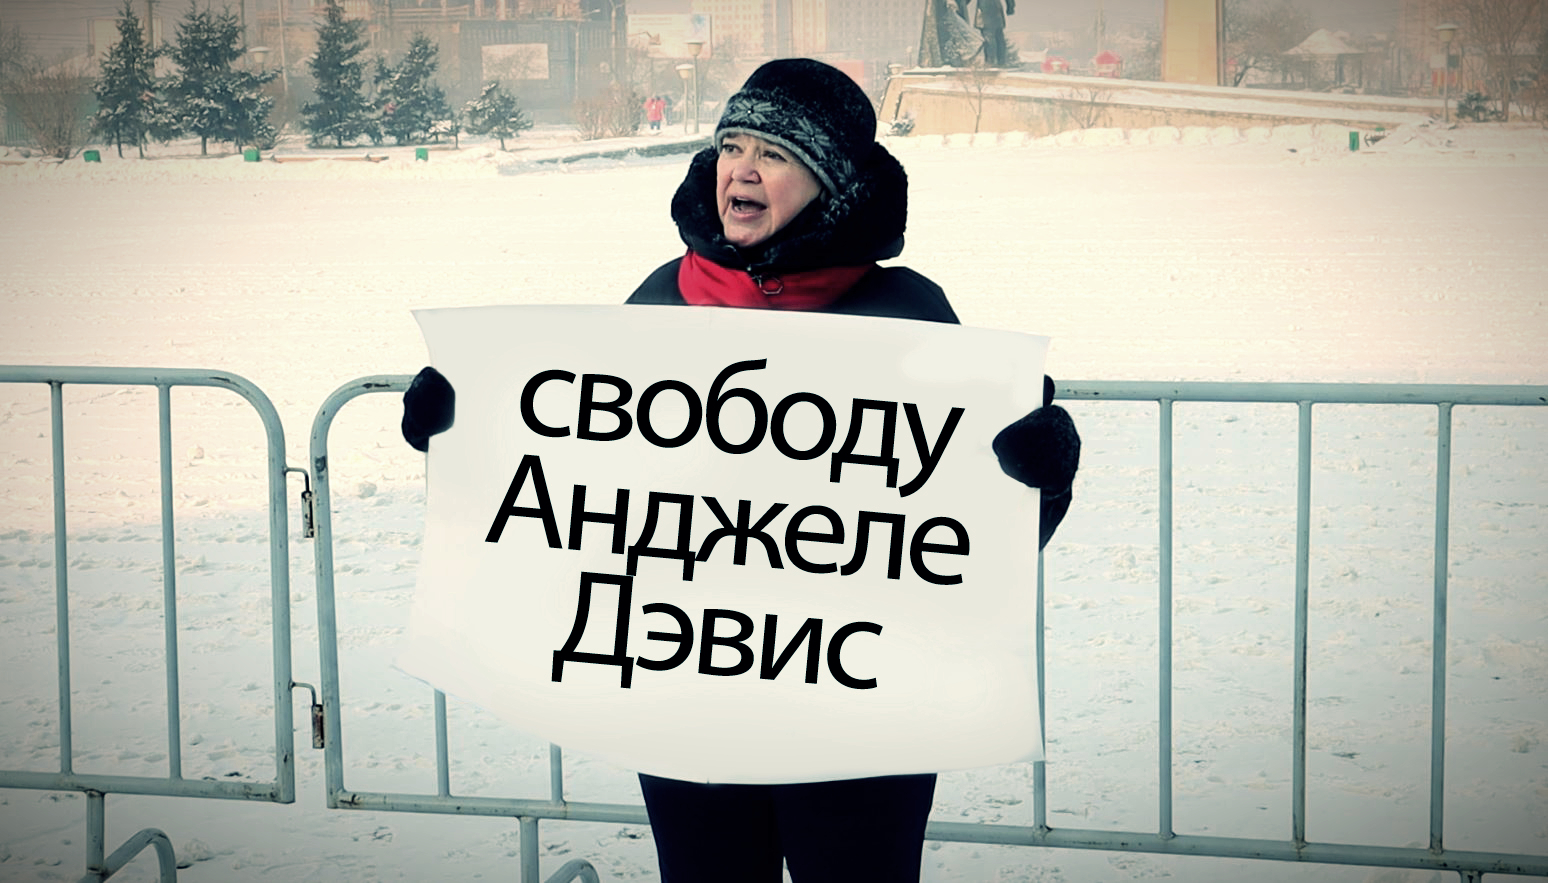 По сути, это даже не фотошоп, а стиль жизни. Марине Львовне всегда было пофига за кого «топить». Чита. Площадь Революции. 31 января 2021 год.